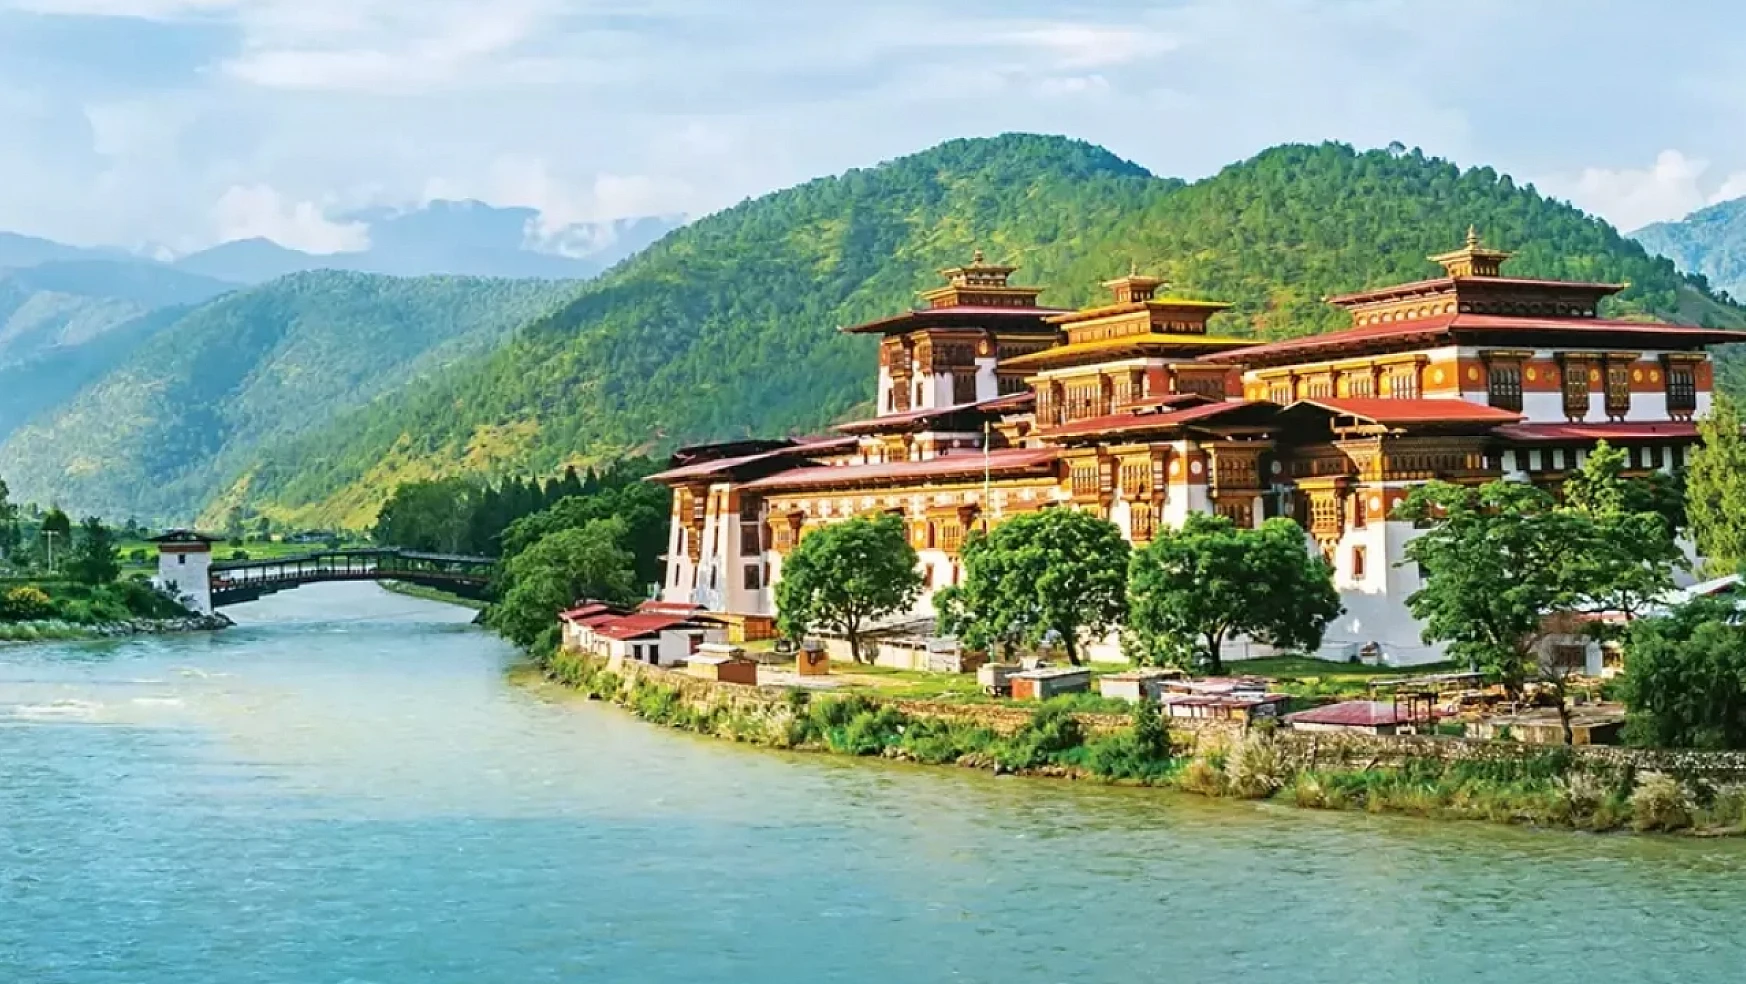 Butan: Dünya üzerindeki tek karbon negatif ülke ve sürdürülebilirlik modeli